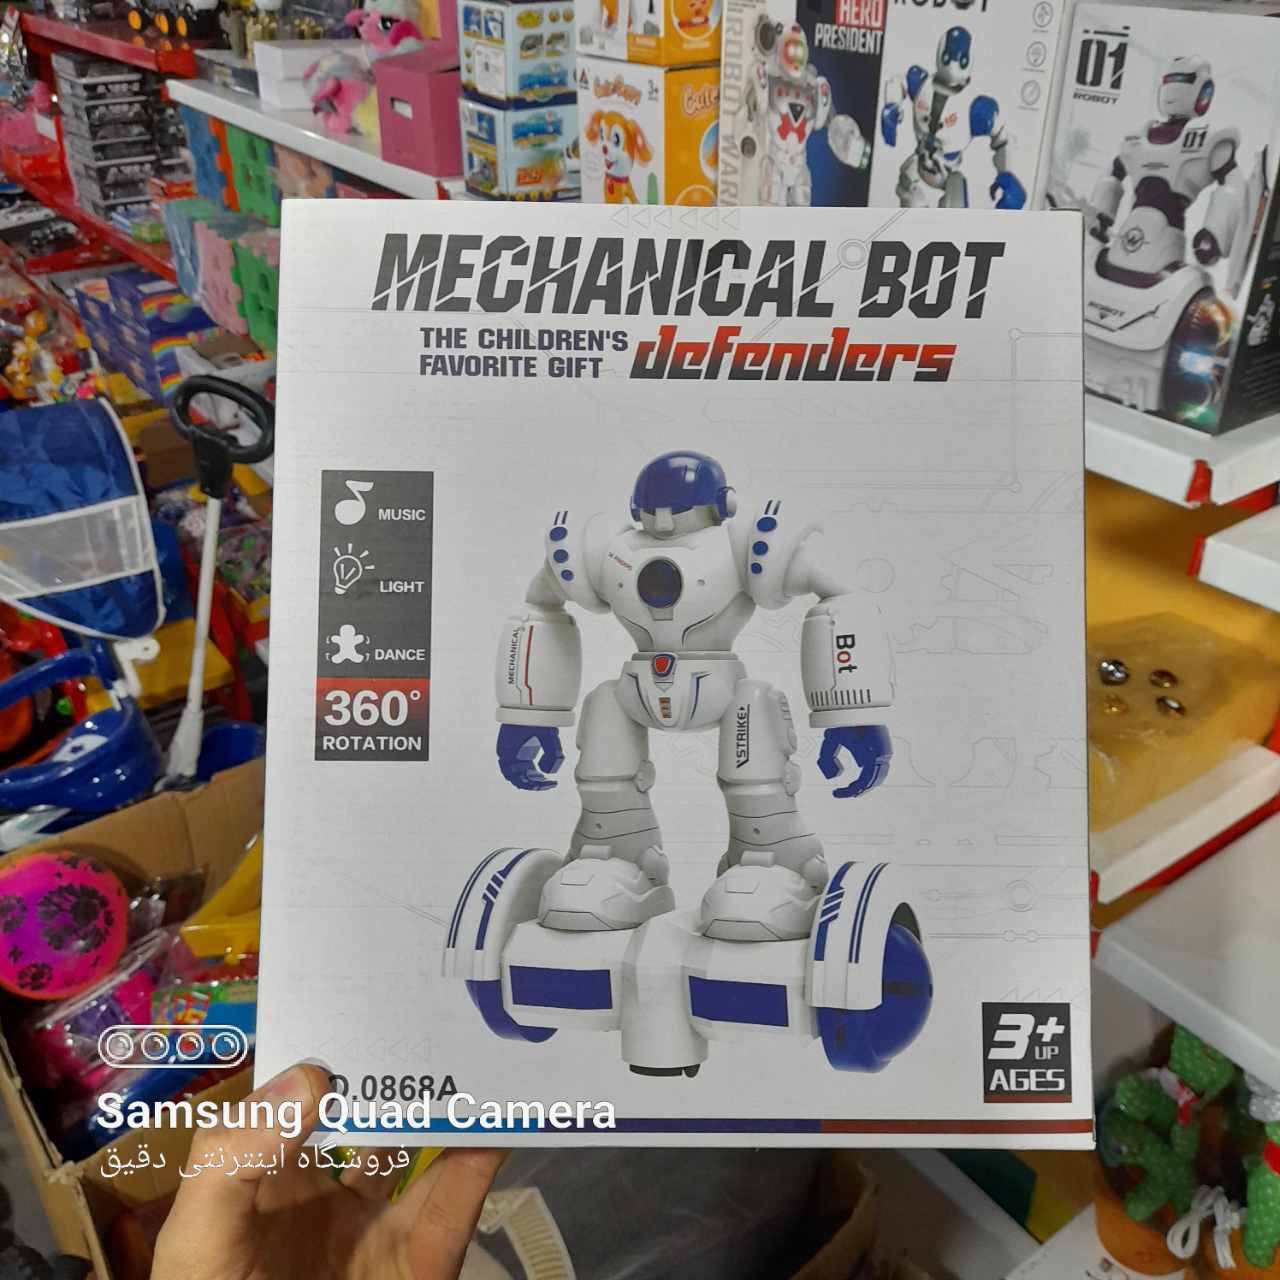  خرید اسباب بازی ربات موزیکال نگهبان بزرگ به قیمت بسیار خوب